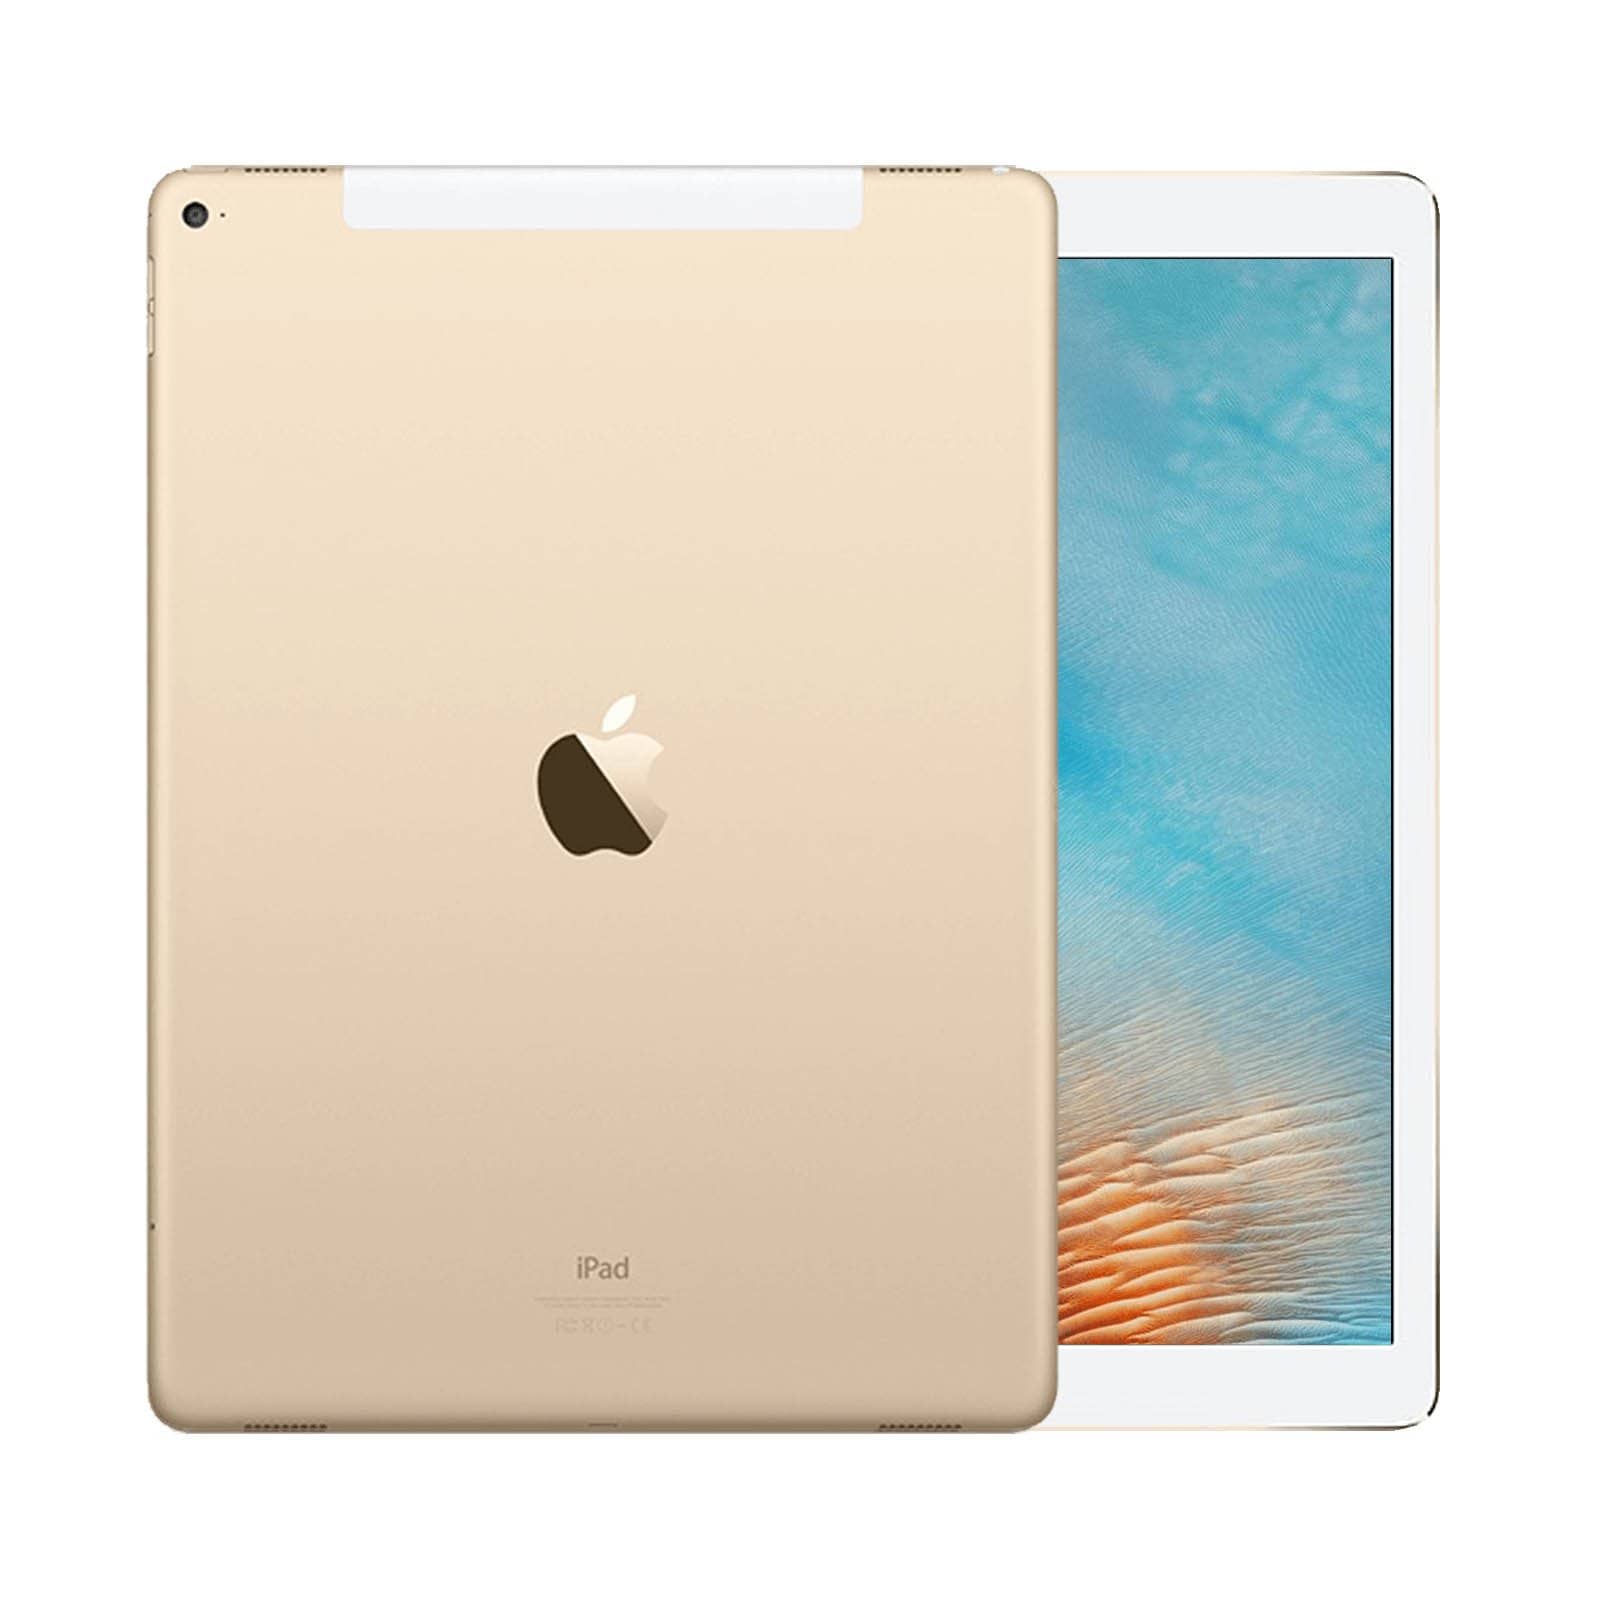 iPad Pro 12.9 Inch 1st Gen 32GB Gold Good - WiFi 32GB Gold Good